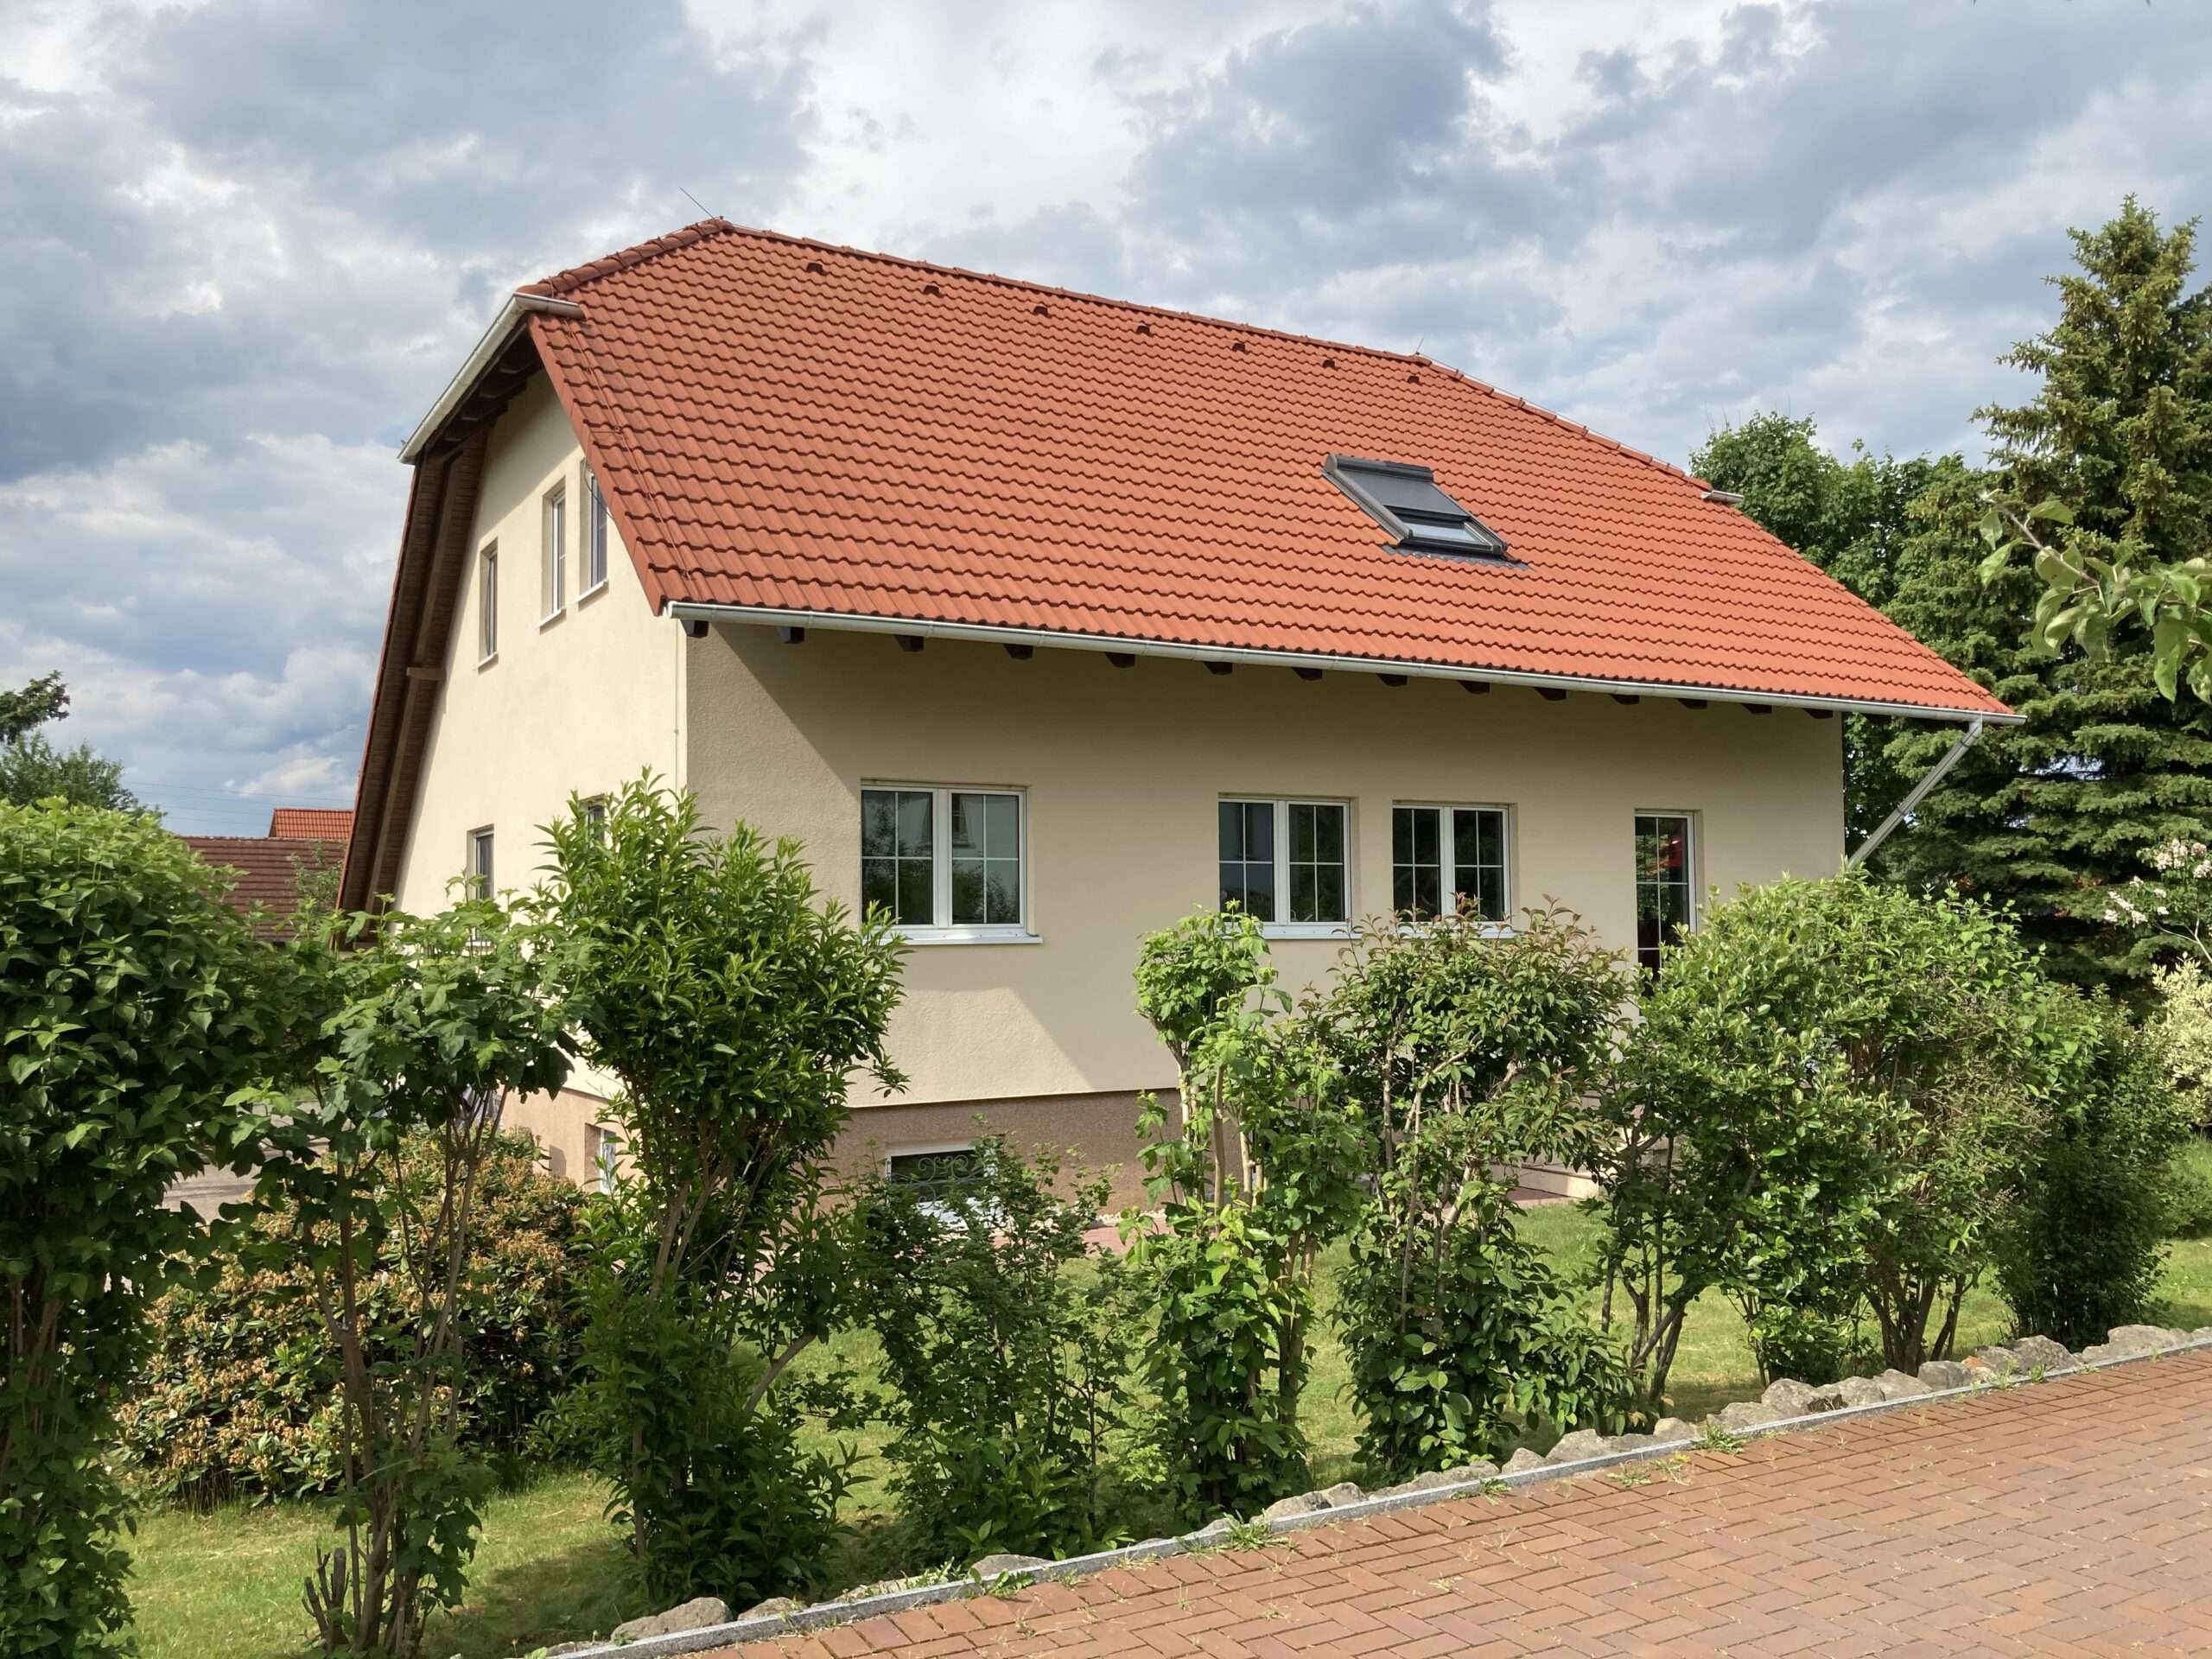 Referenz: Einfamilienhaus in Bischofswerda verkauft im Juli 2022